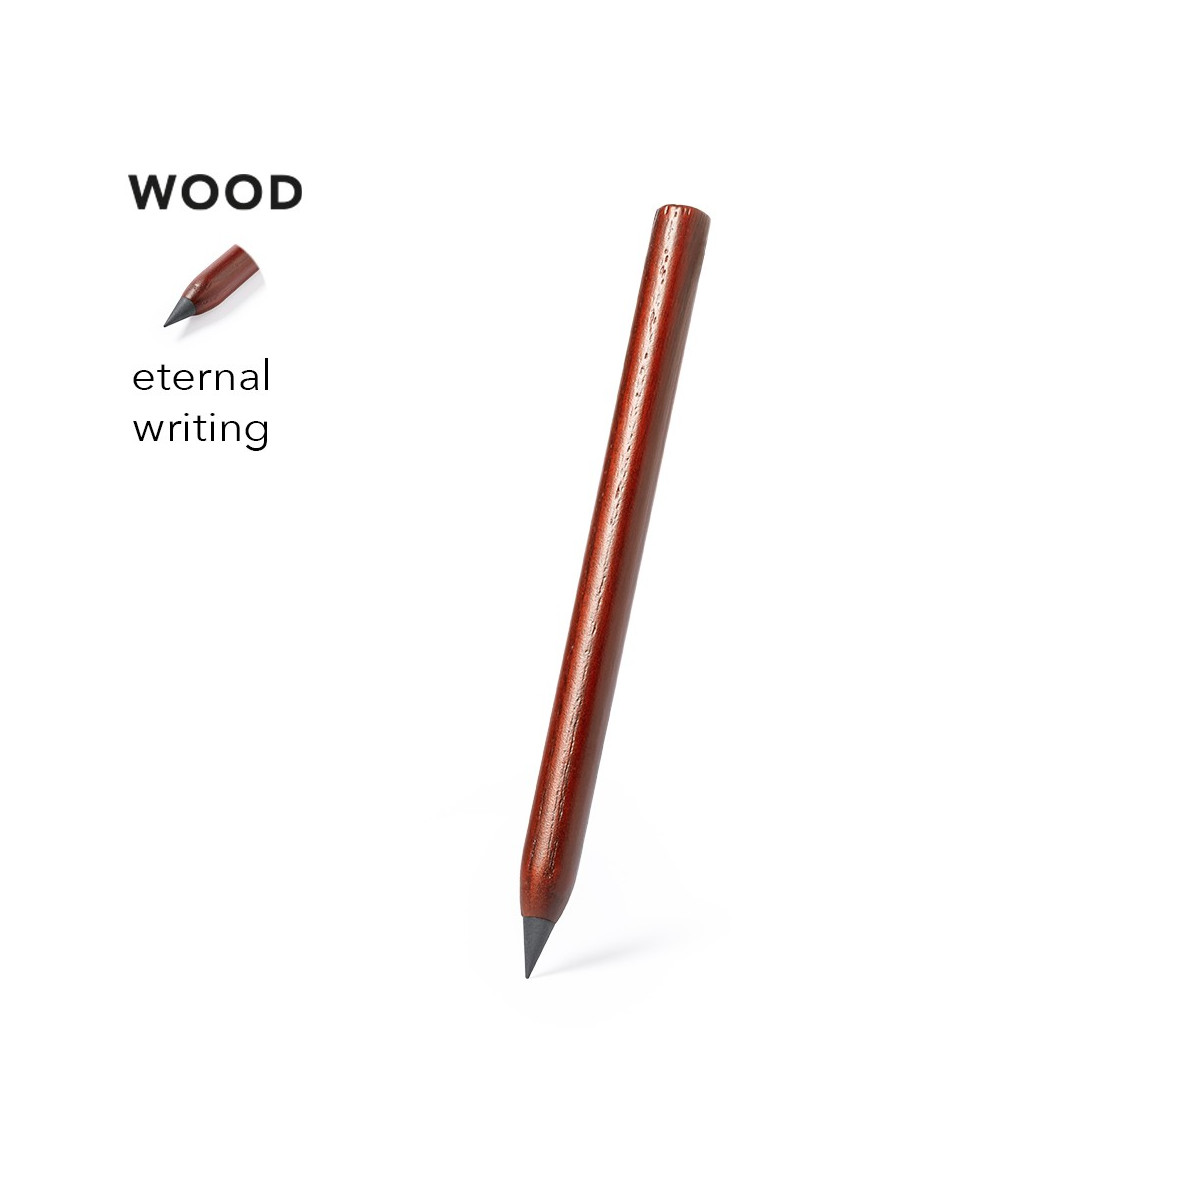 Eternal pencil riutilizzabile e senza sprechi